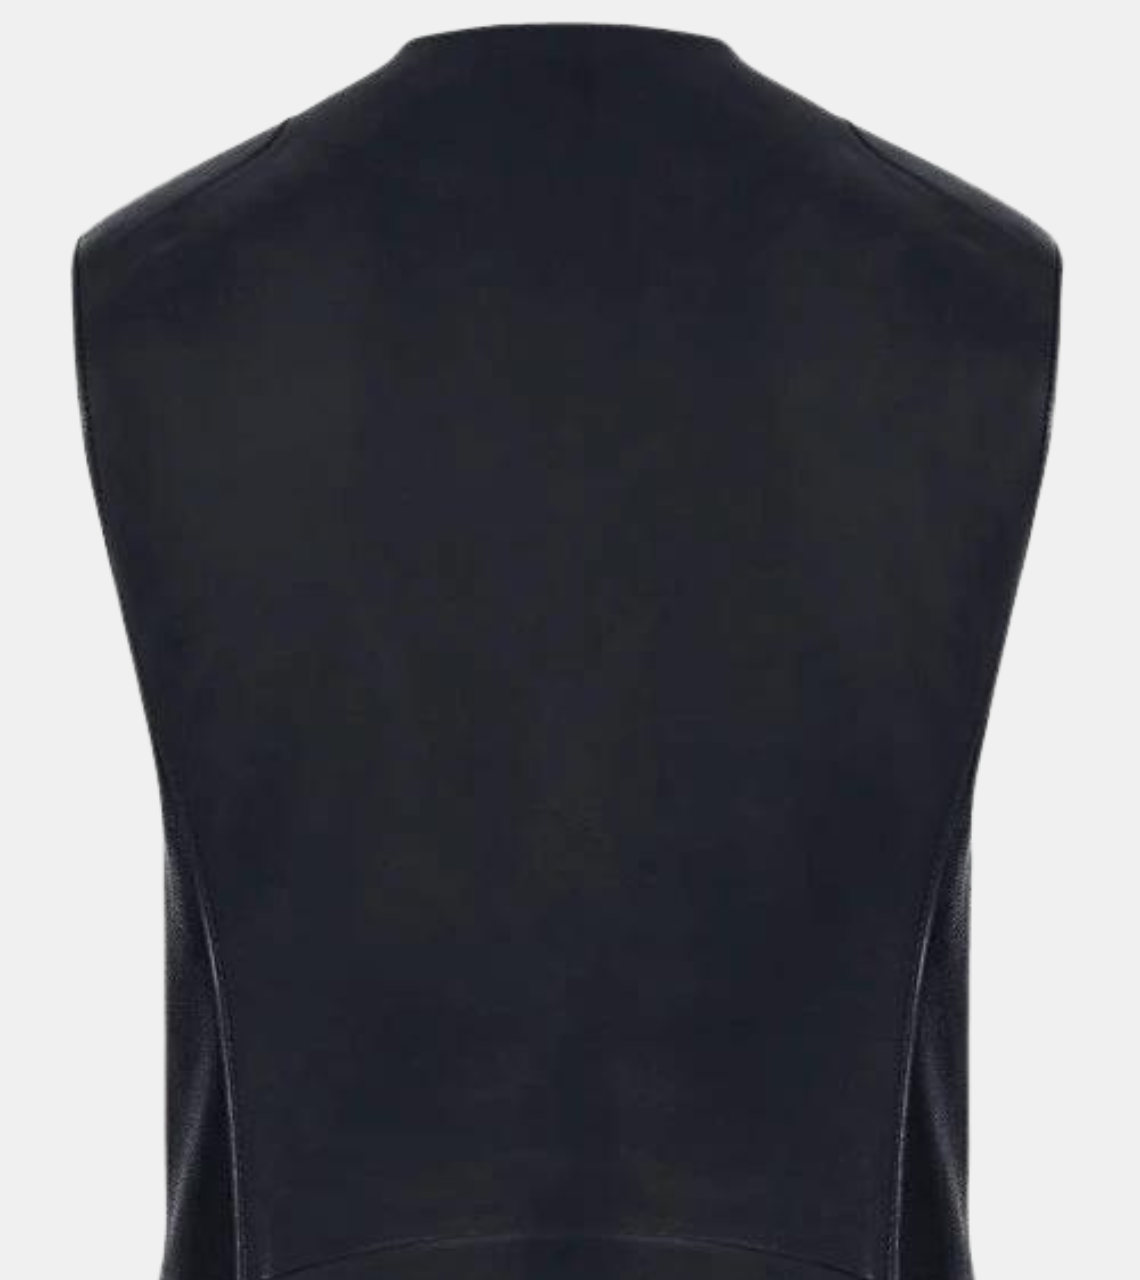 Wolfer Men's Black Leather Vest Back